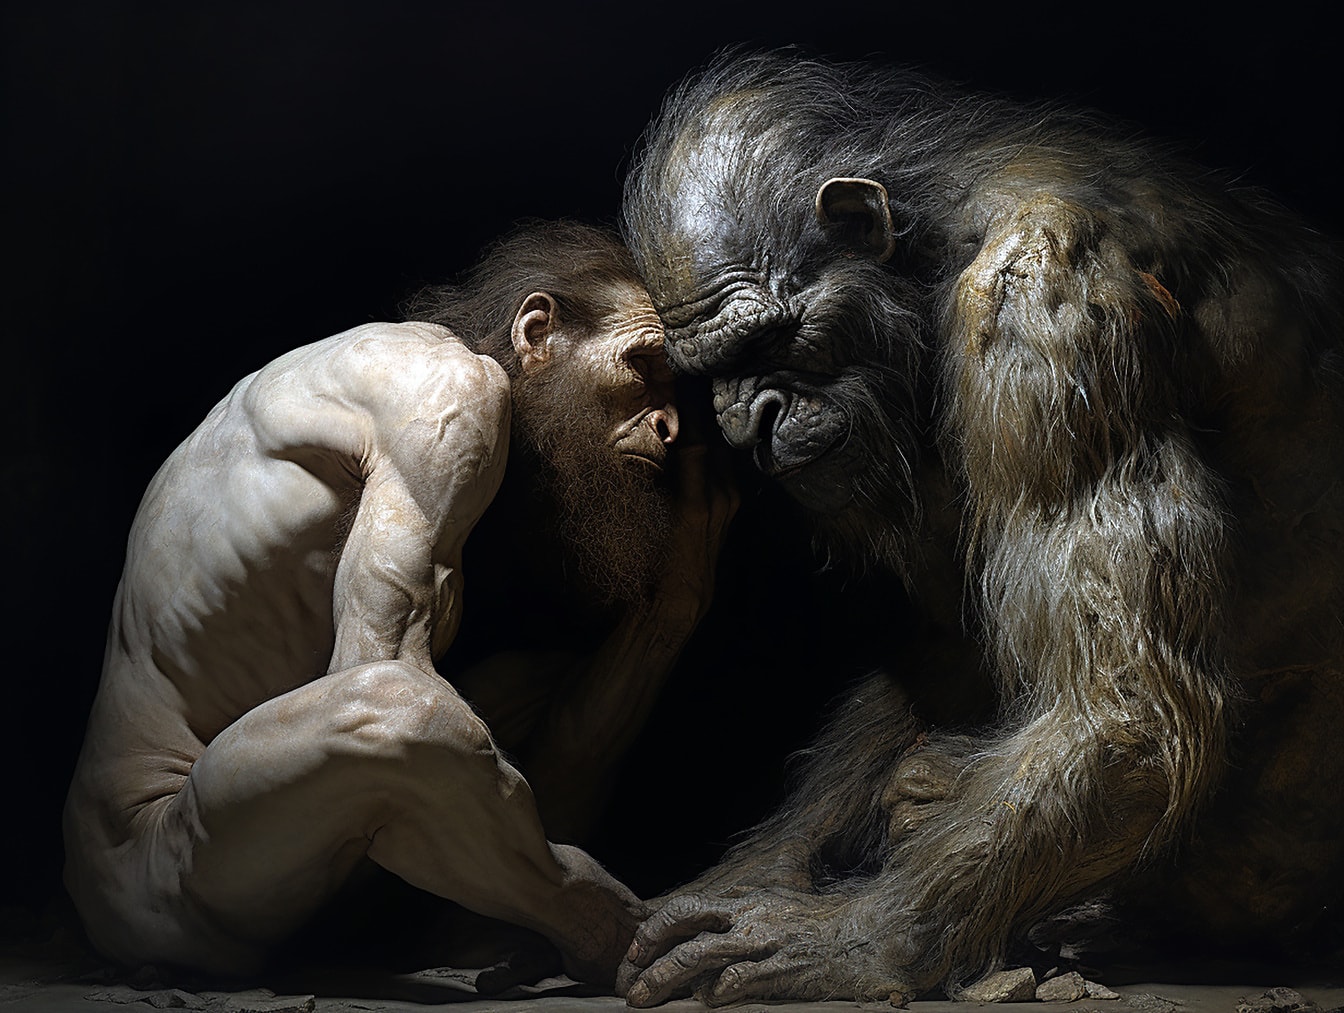 Évolution de l’homme préhistorique de Néandertal à partir d’un primate